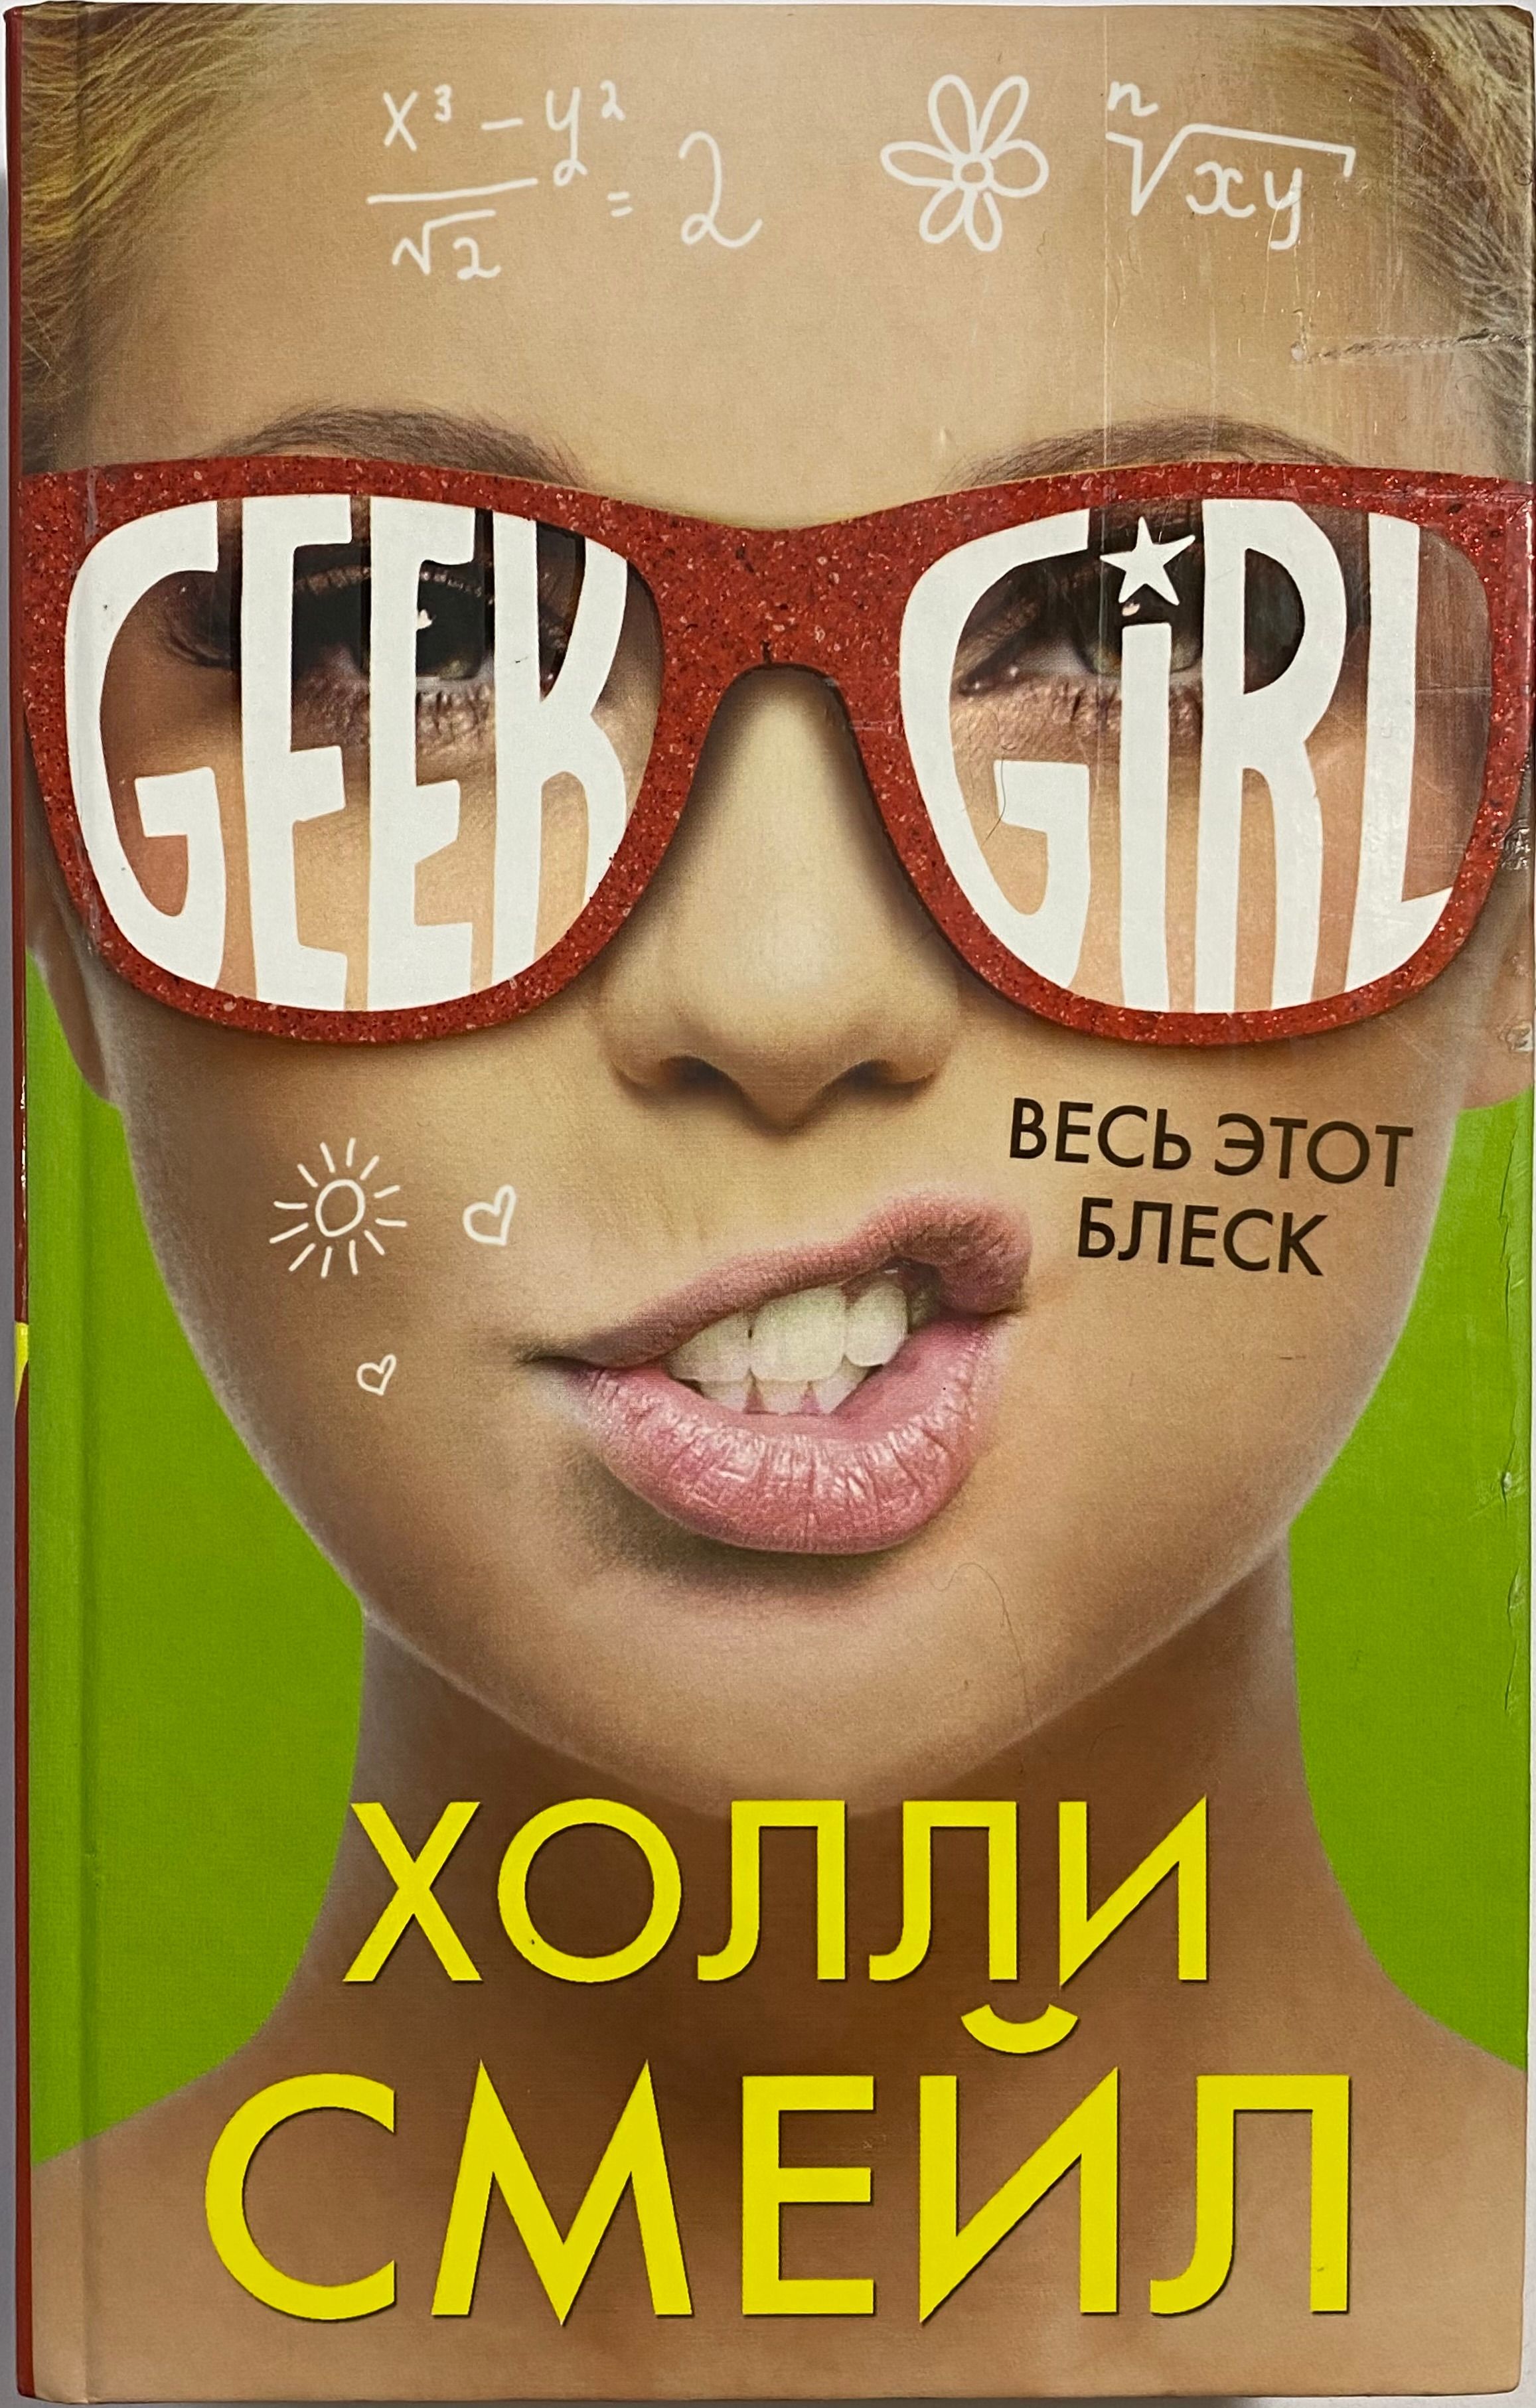 Обложка холли. Смейл Холли "девушка-гик". Холли Смейл книги Geek girl. Холли Смейл весь этот блеск обложка книги. Весь этот блеск.